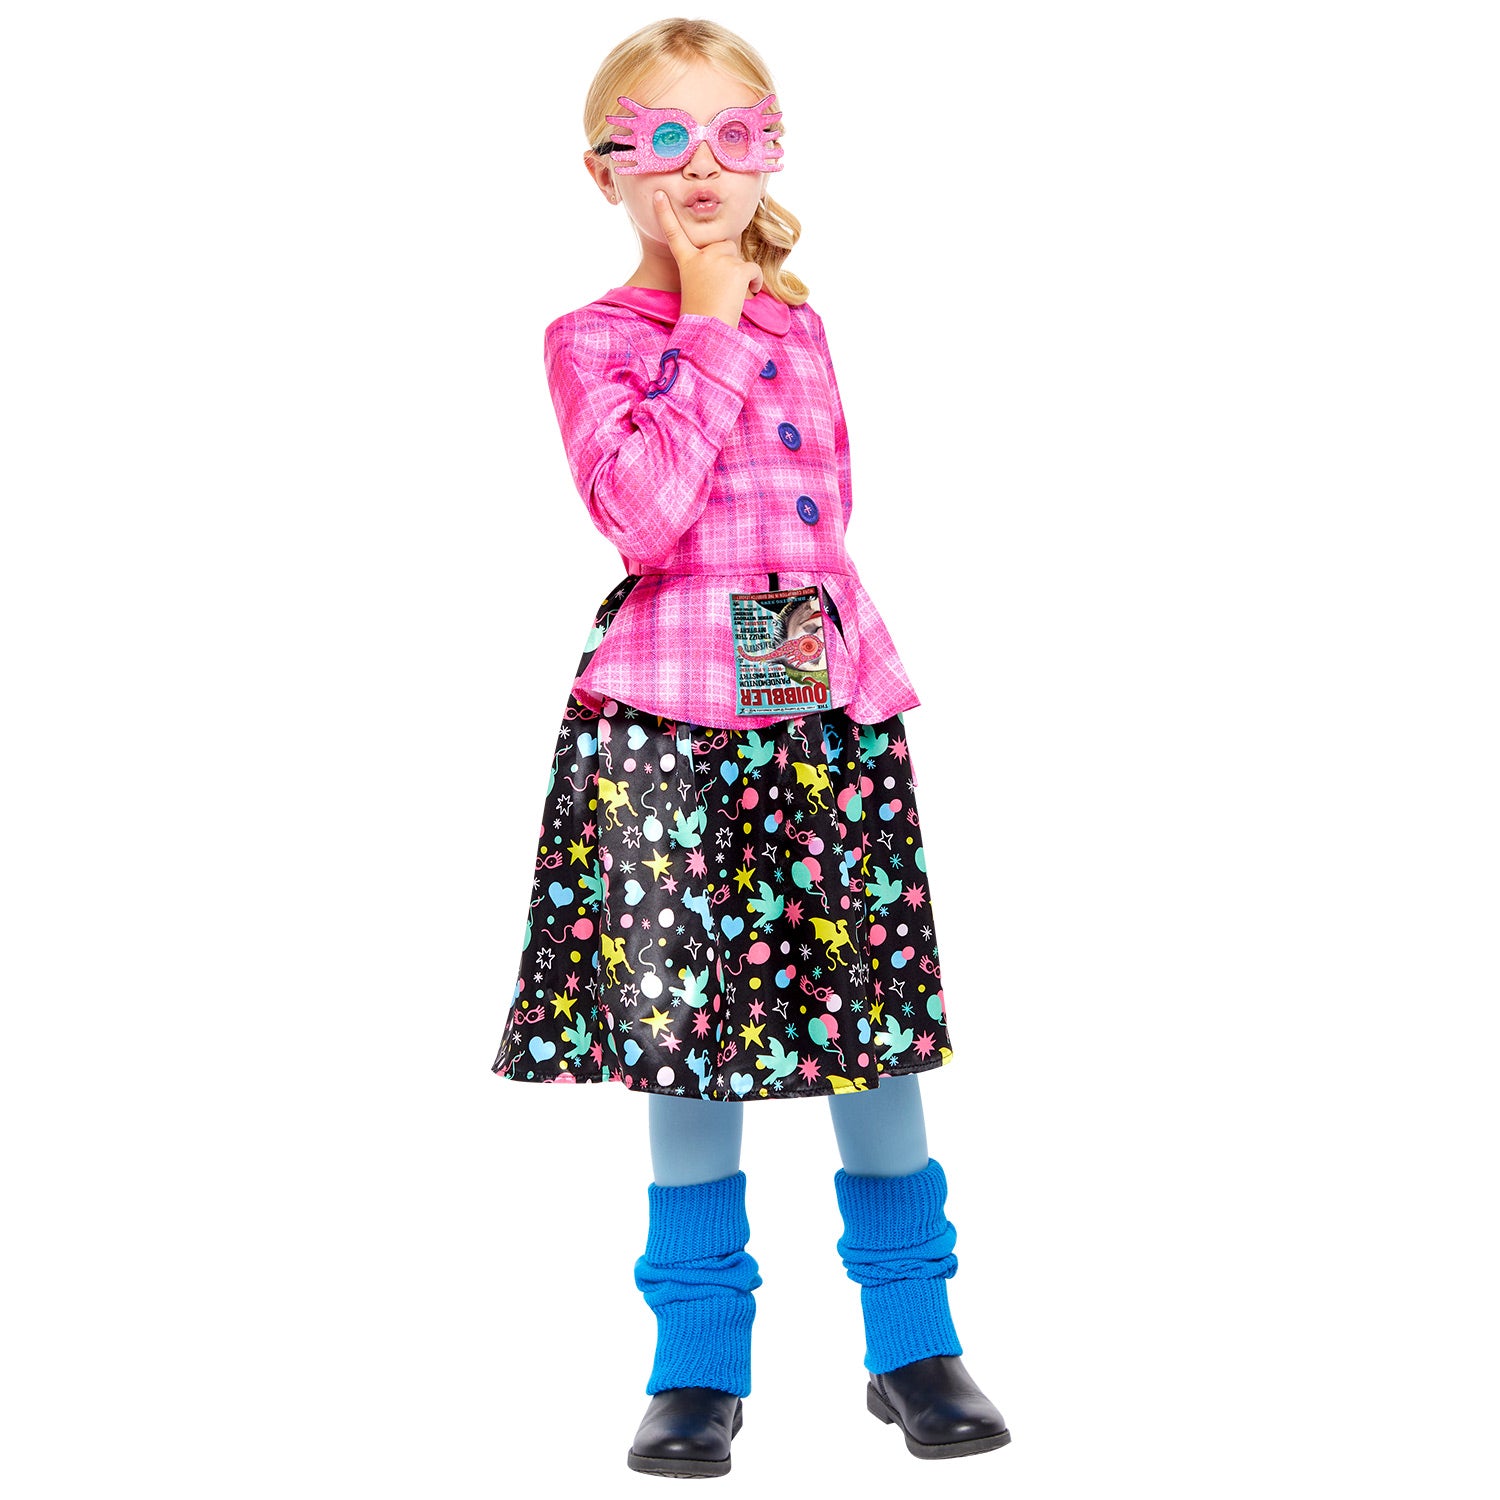 Kid's Luna Lovegood Costume